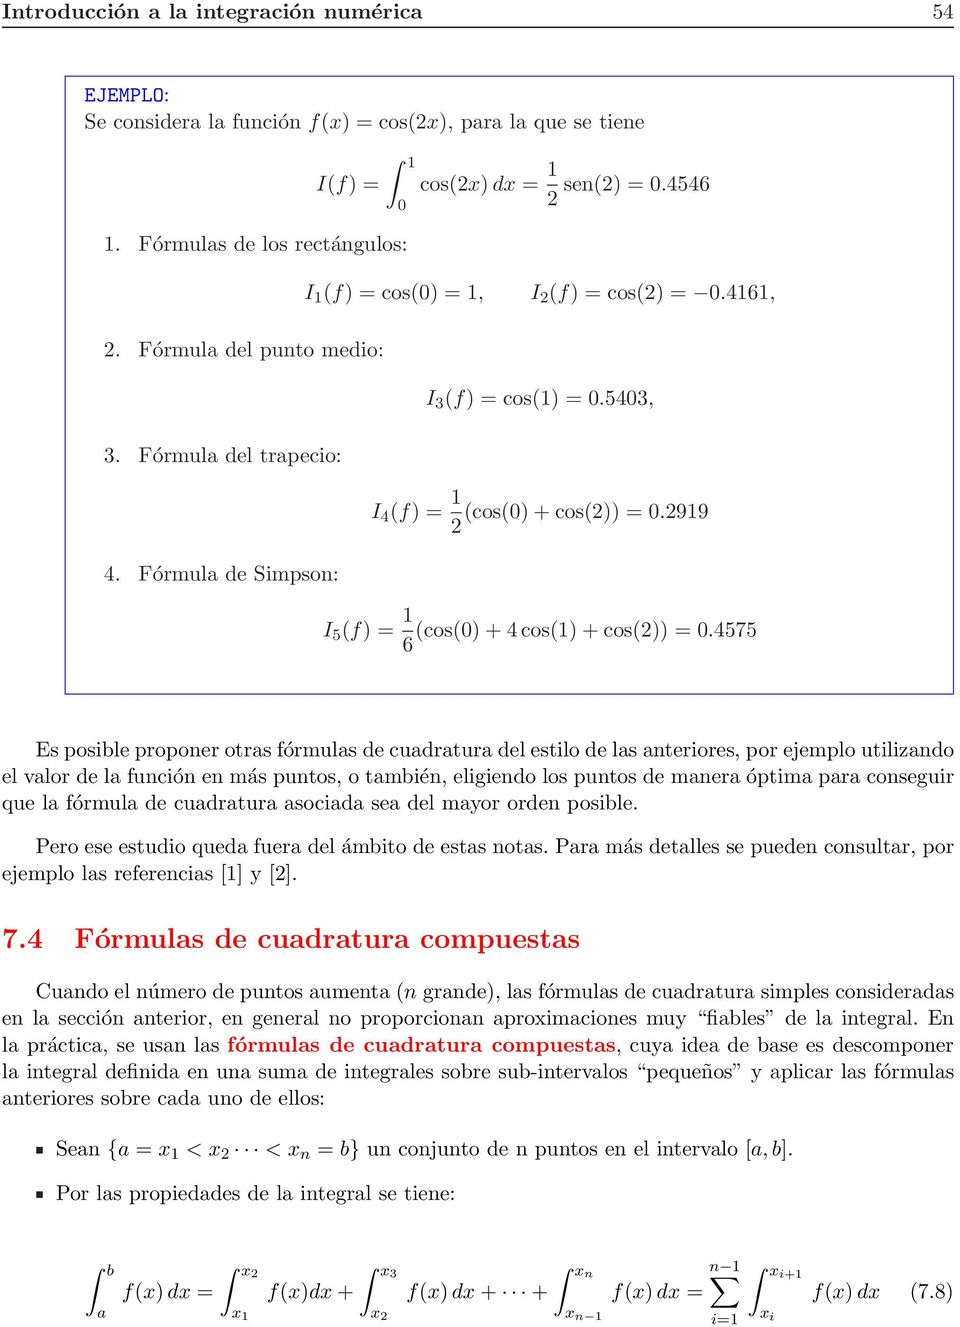 Fórmul de Simpson: I 5 f) = 1 cos0) + 4 cos1) + cos)) = 0.